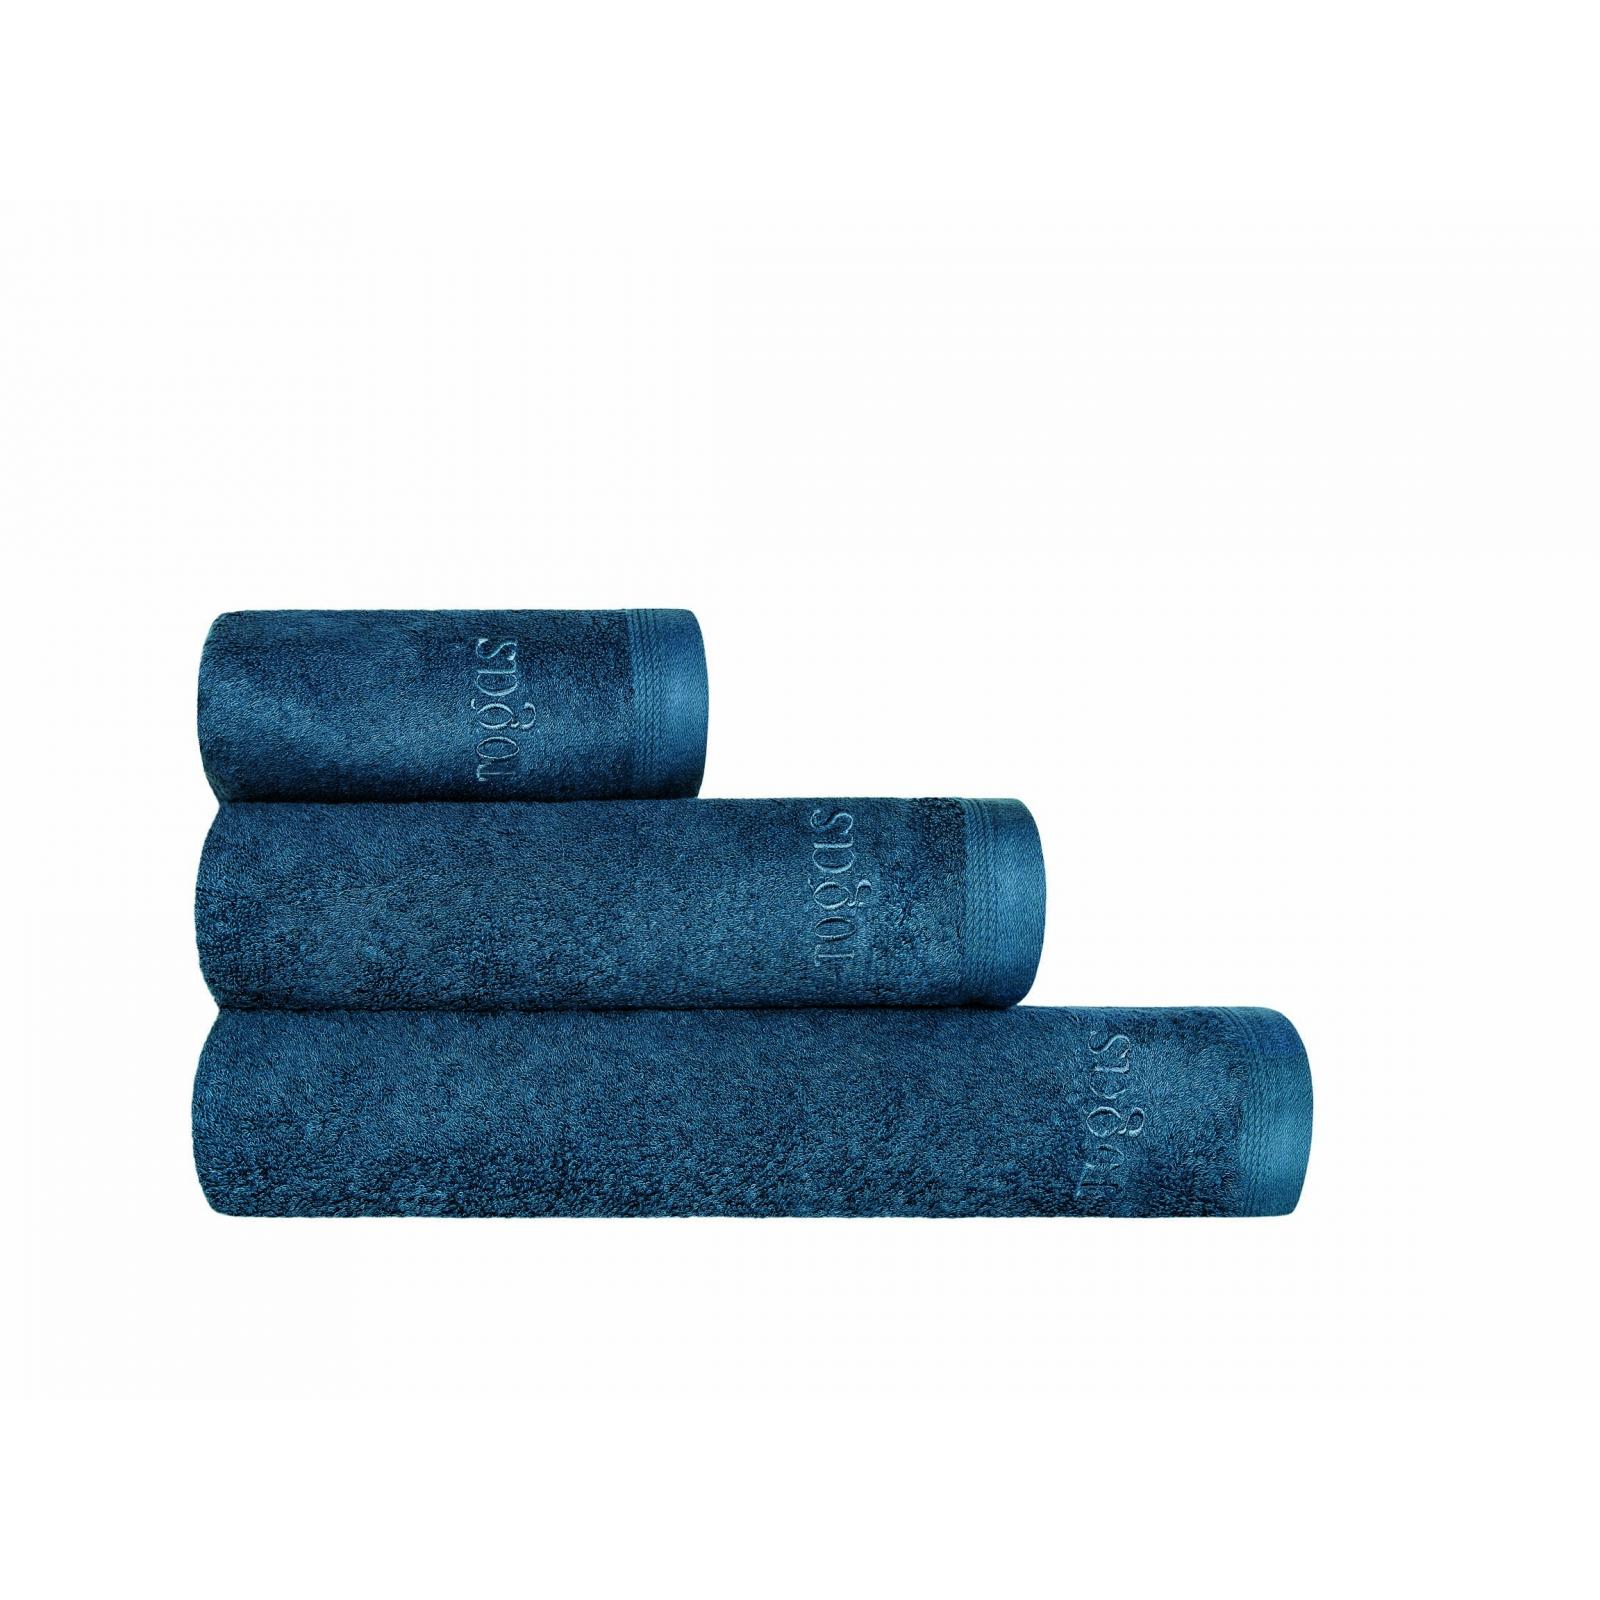 Полотенце Togas Пуатье темно-синее 70х140 полотенце togas пуатье темно синее 50х100 см